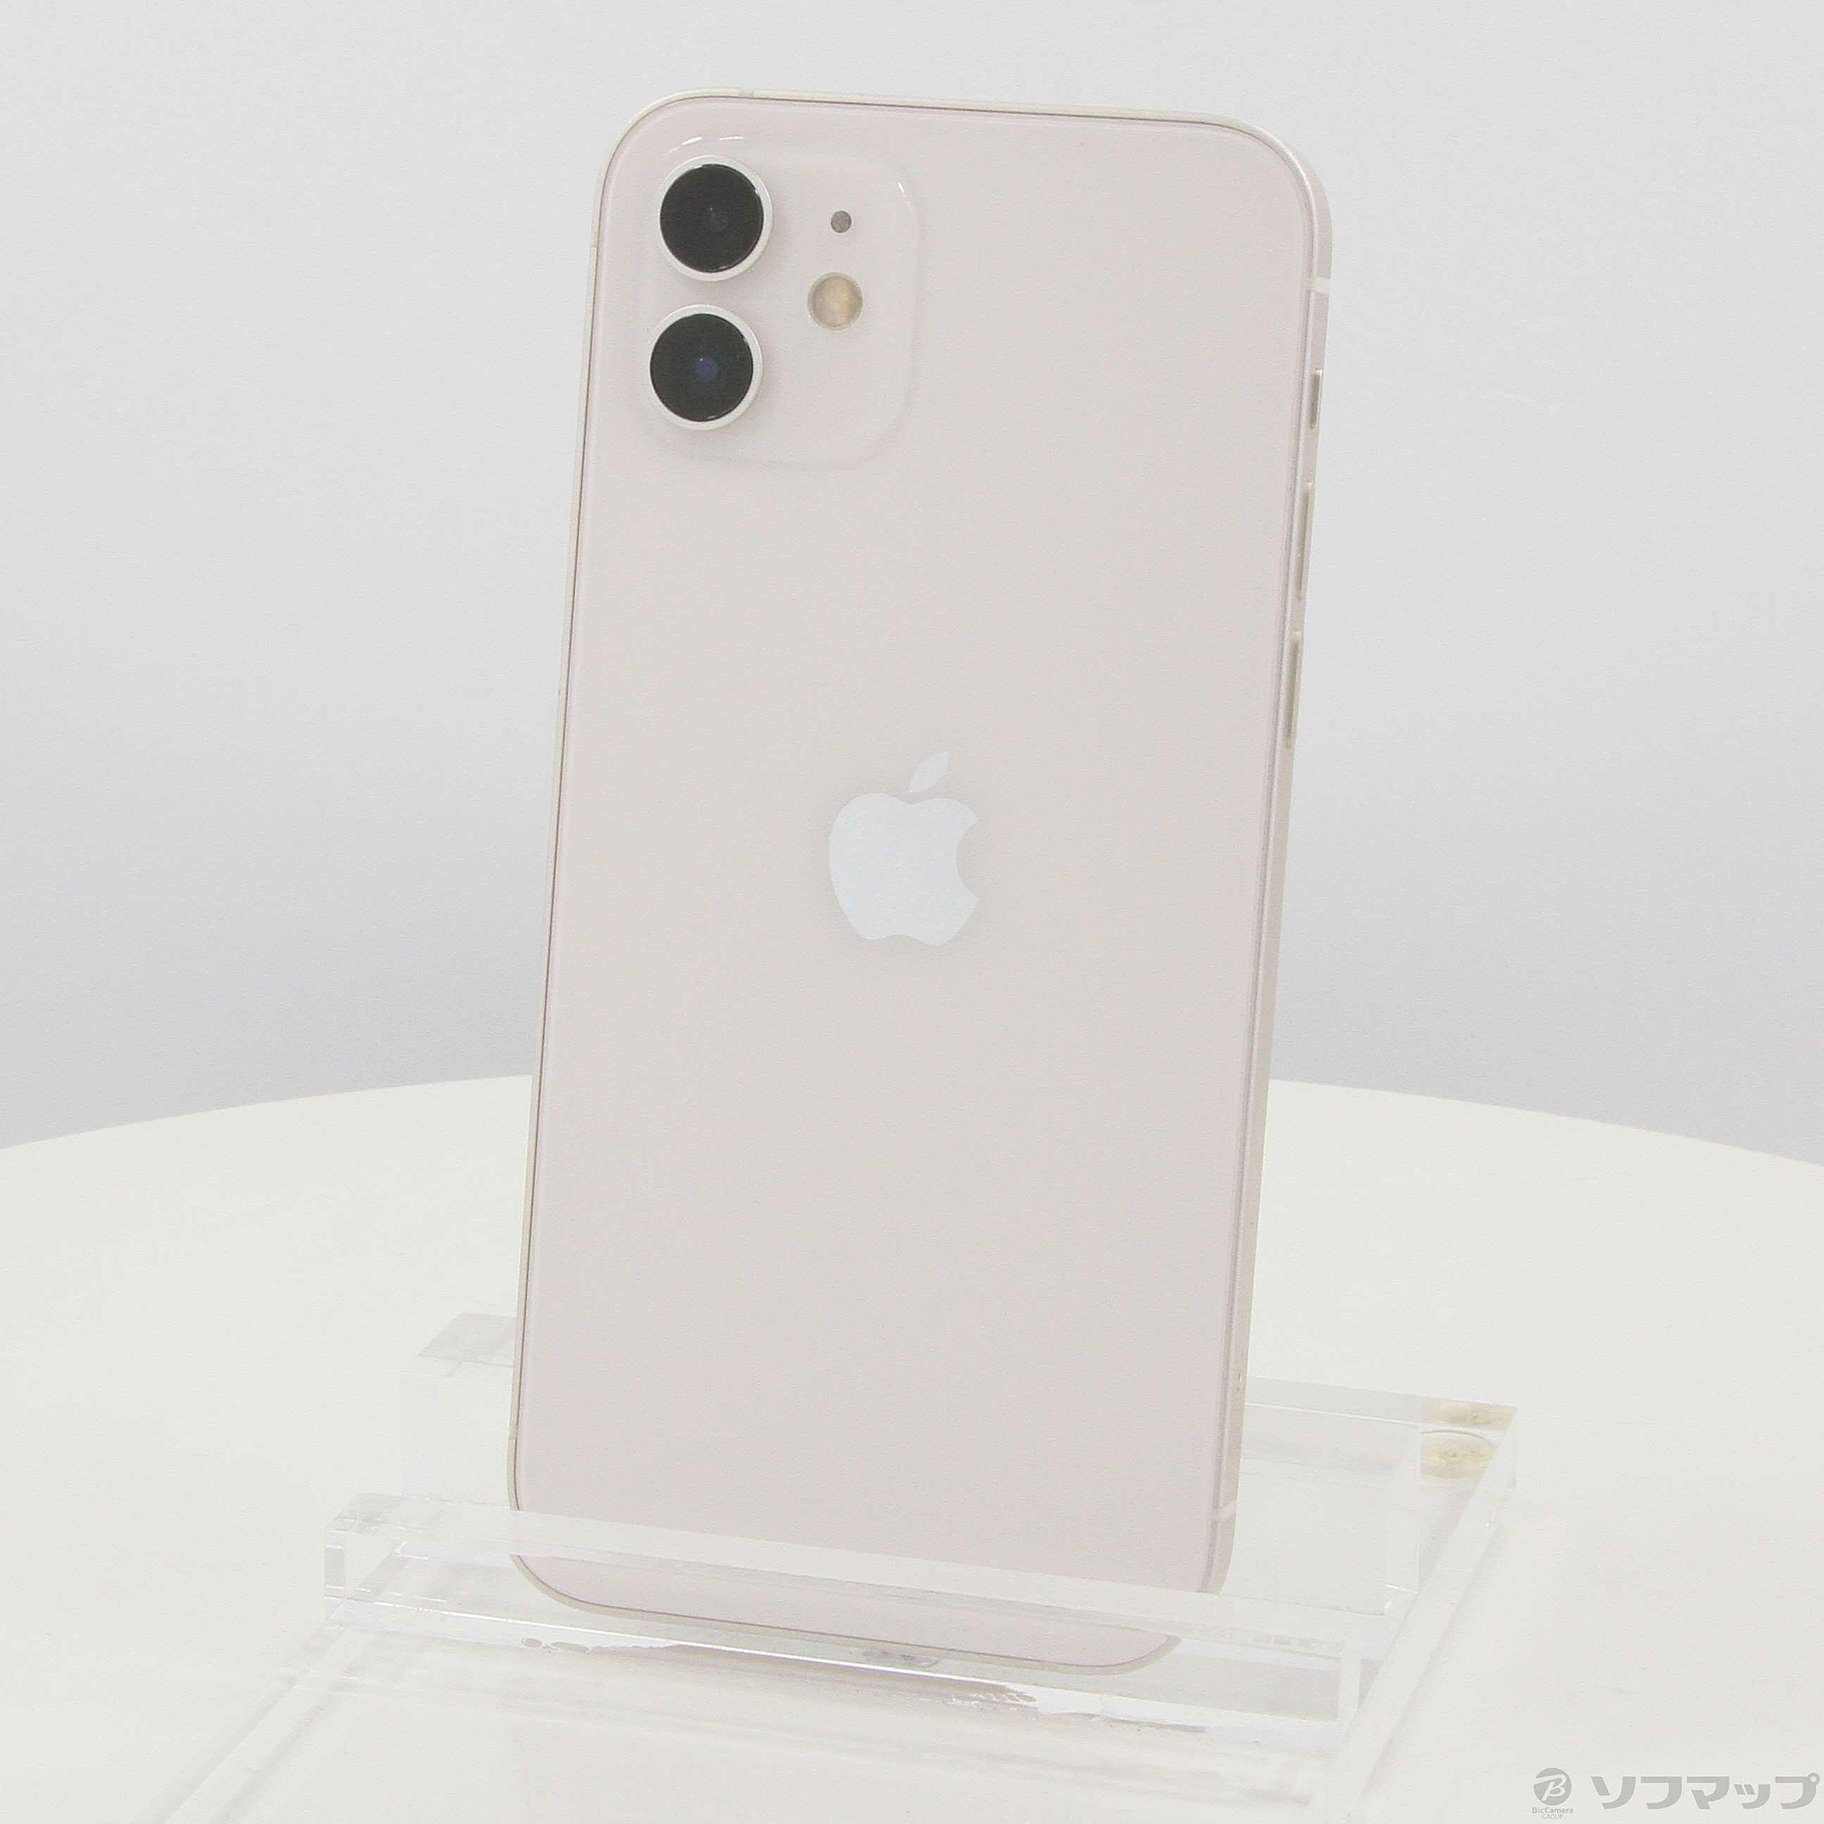 Apple アップル iPhone12 64GB ホワイト